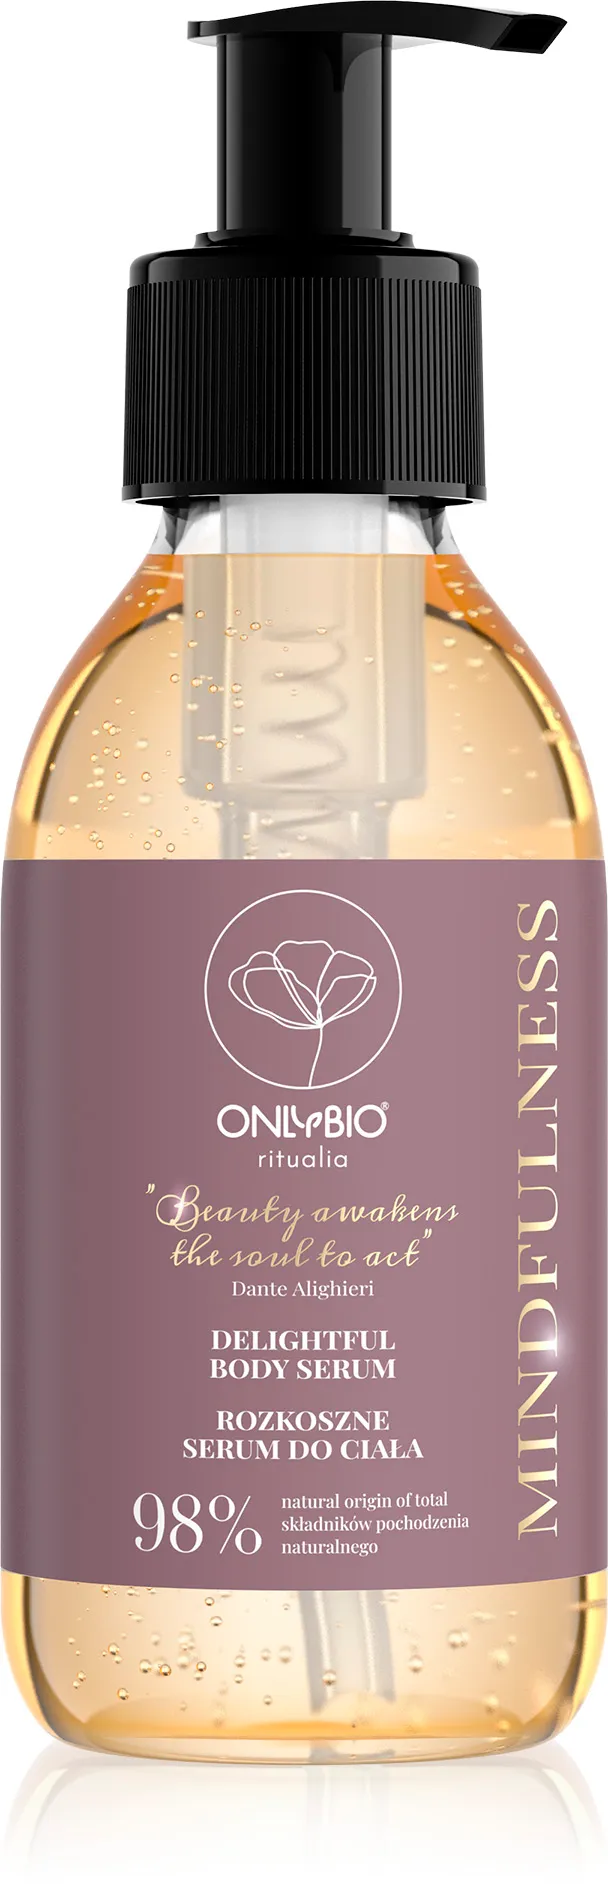 OnlyBio Ritualia Mindfulness rozkoszne serum do ciała, 150 ml